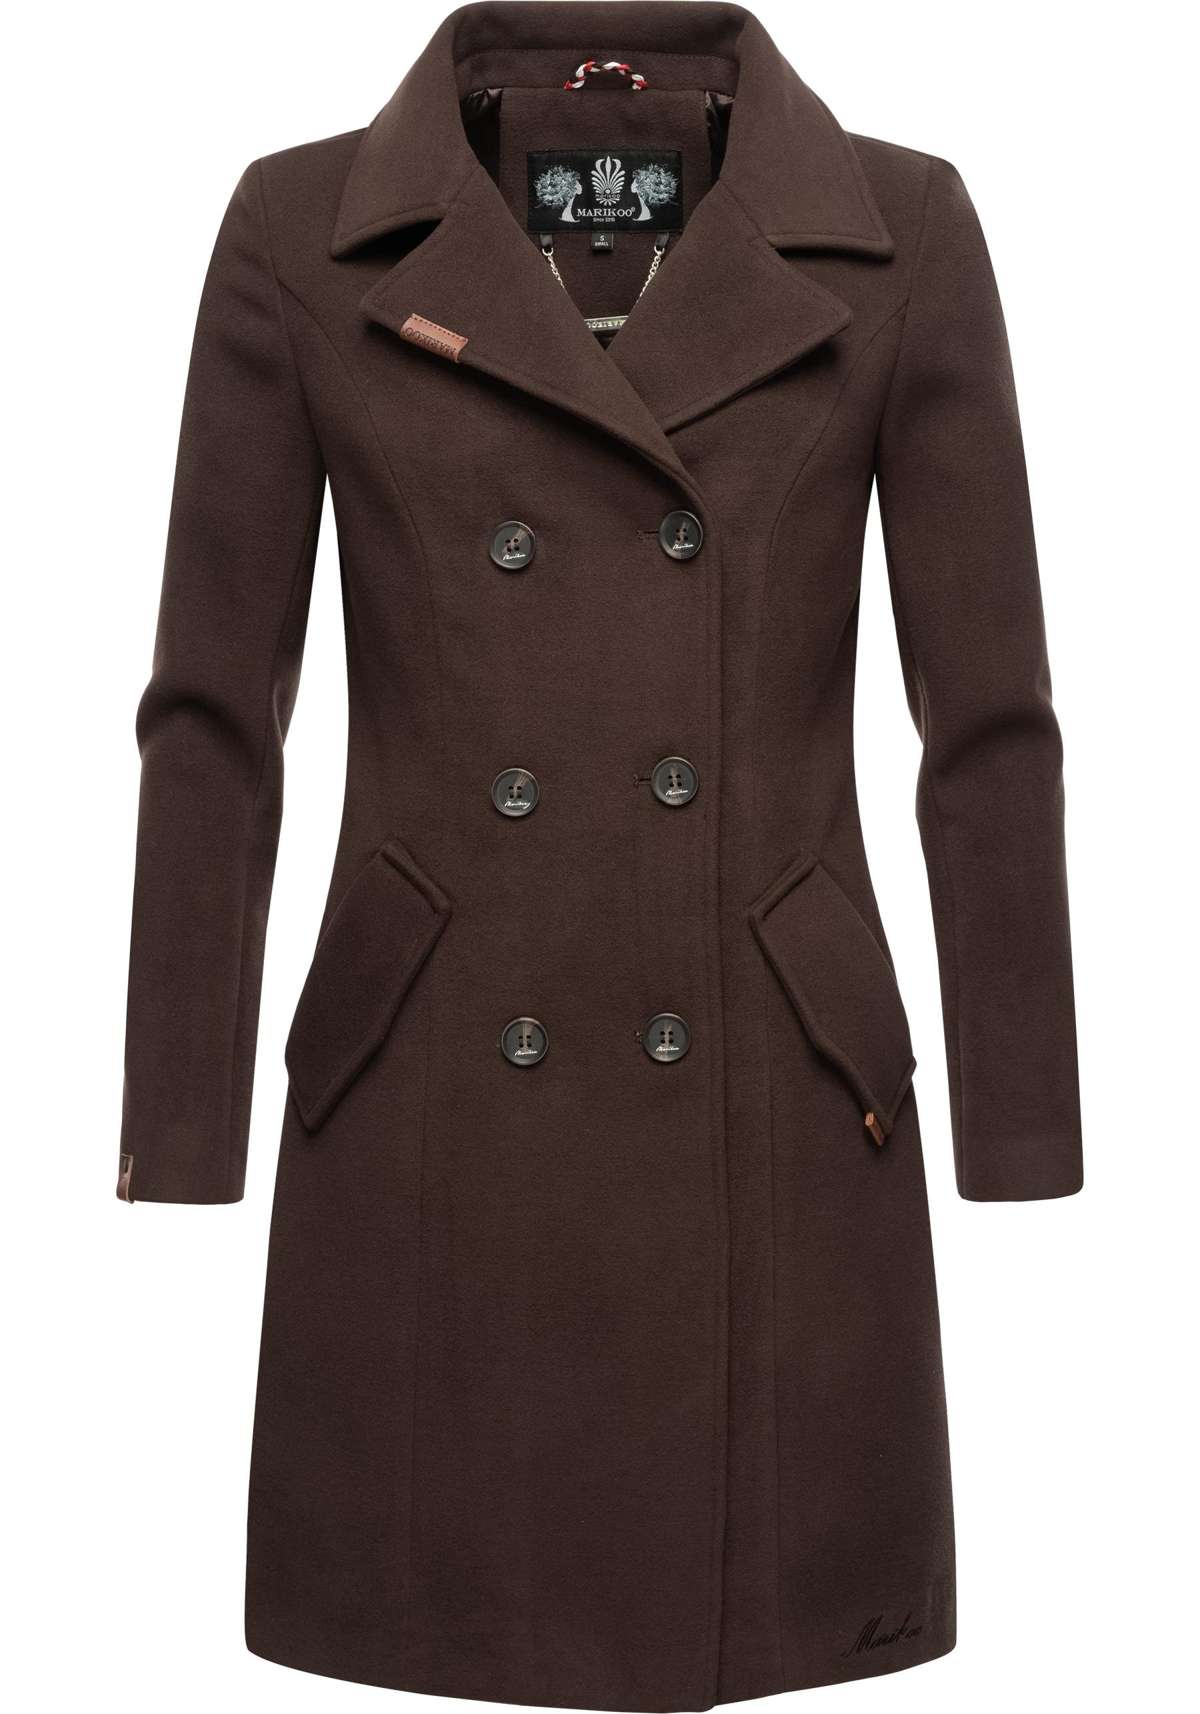 Зимнее пальто, элегантный женский тренч в стиле шерстяного пальто.